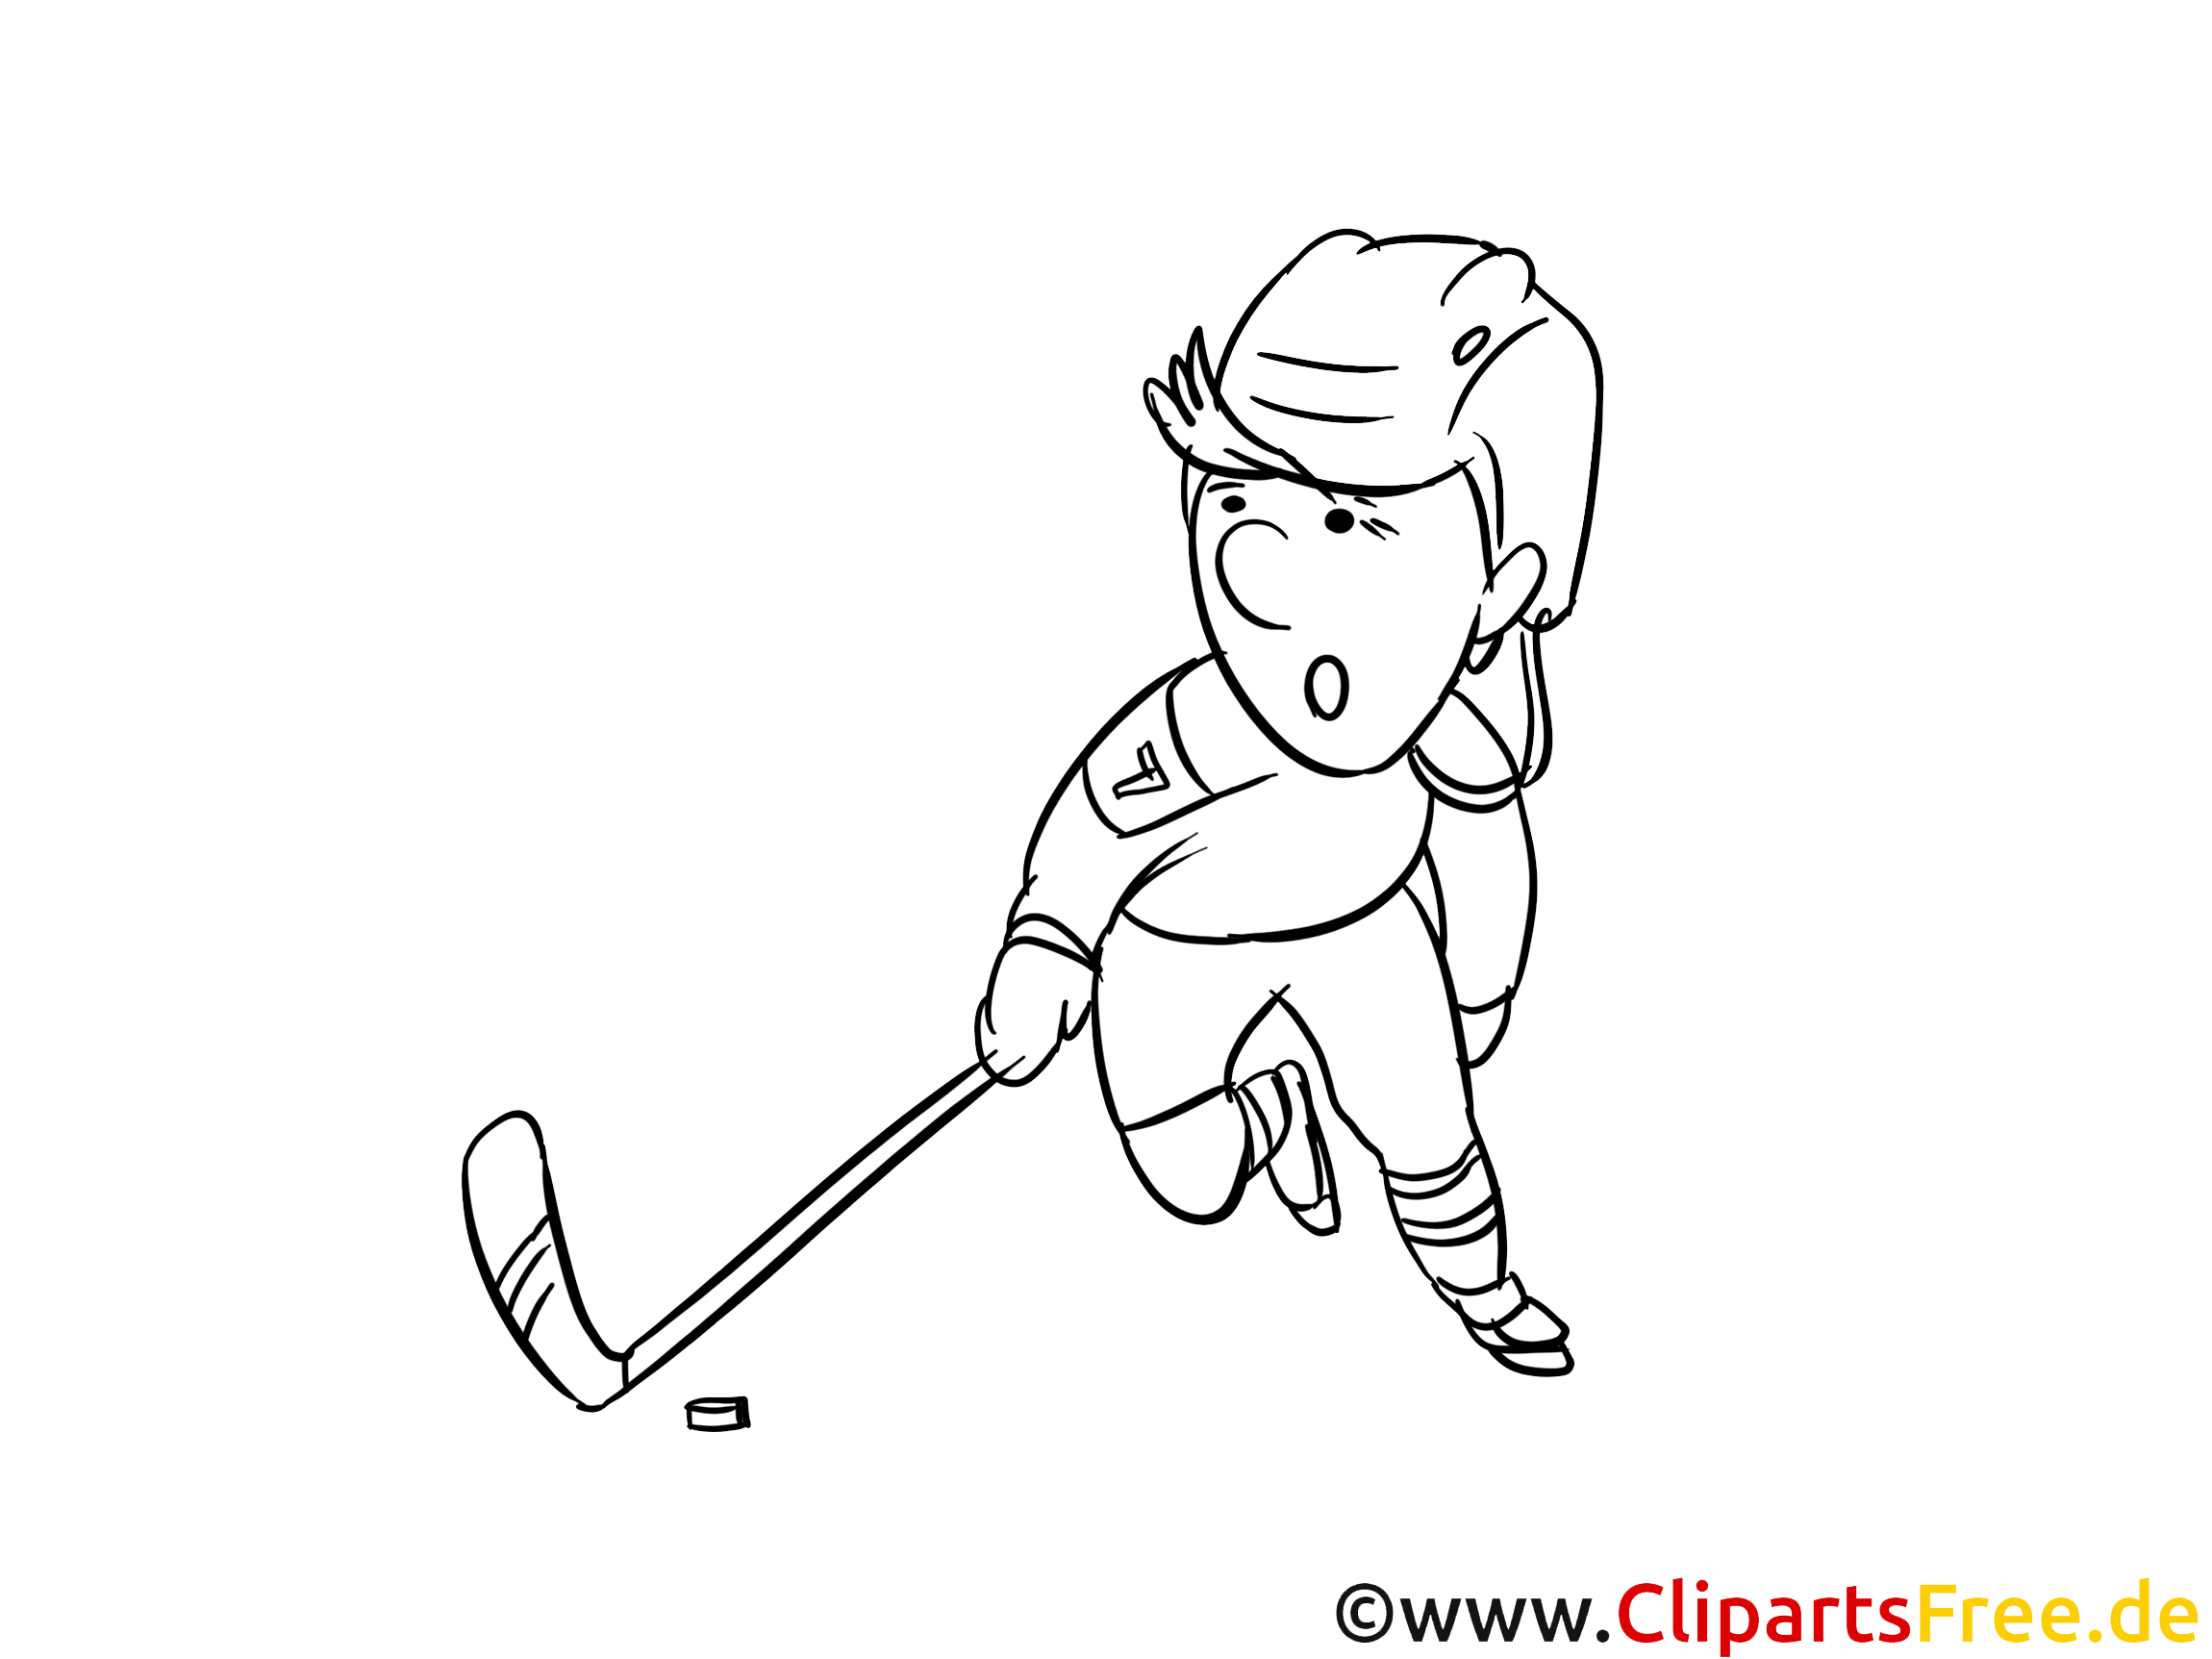 Palet dessins gratuits – Hockey à colorier